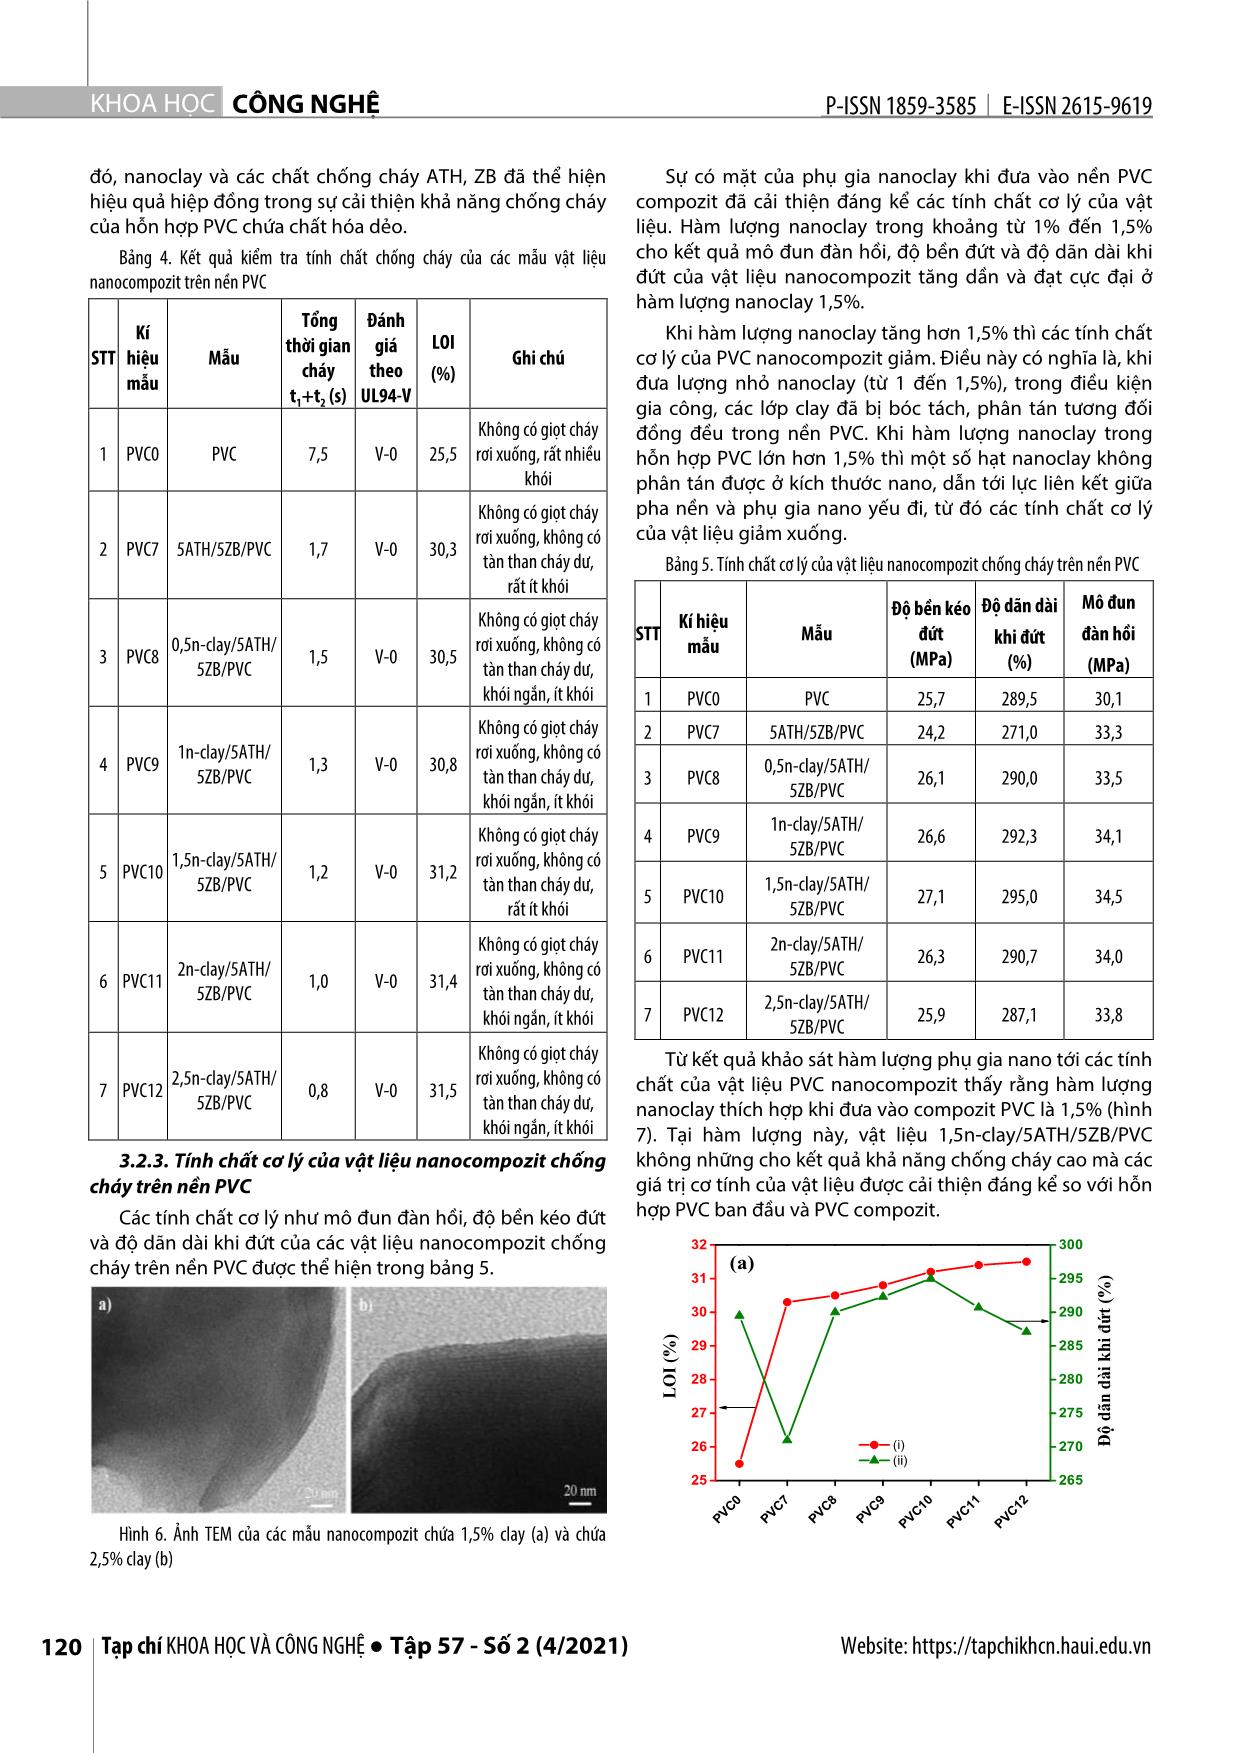 Chế tạo và đánh giá tính chất của vật liệu Nanocompozit chống cháy trên nền Polyvinyl Clorua trang 6